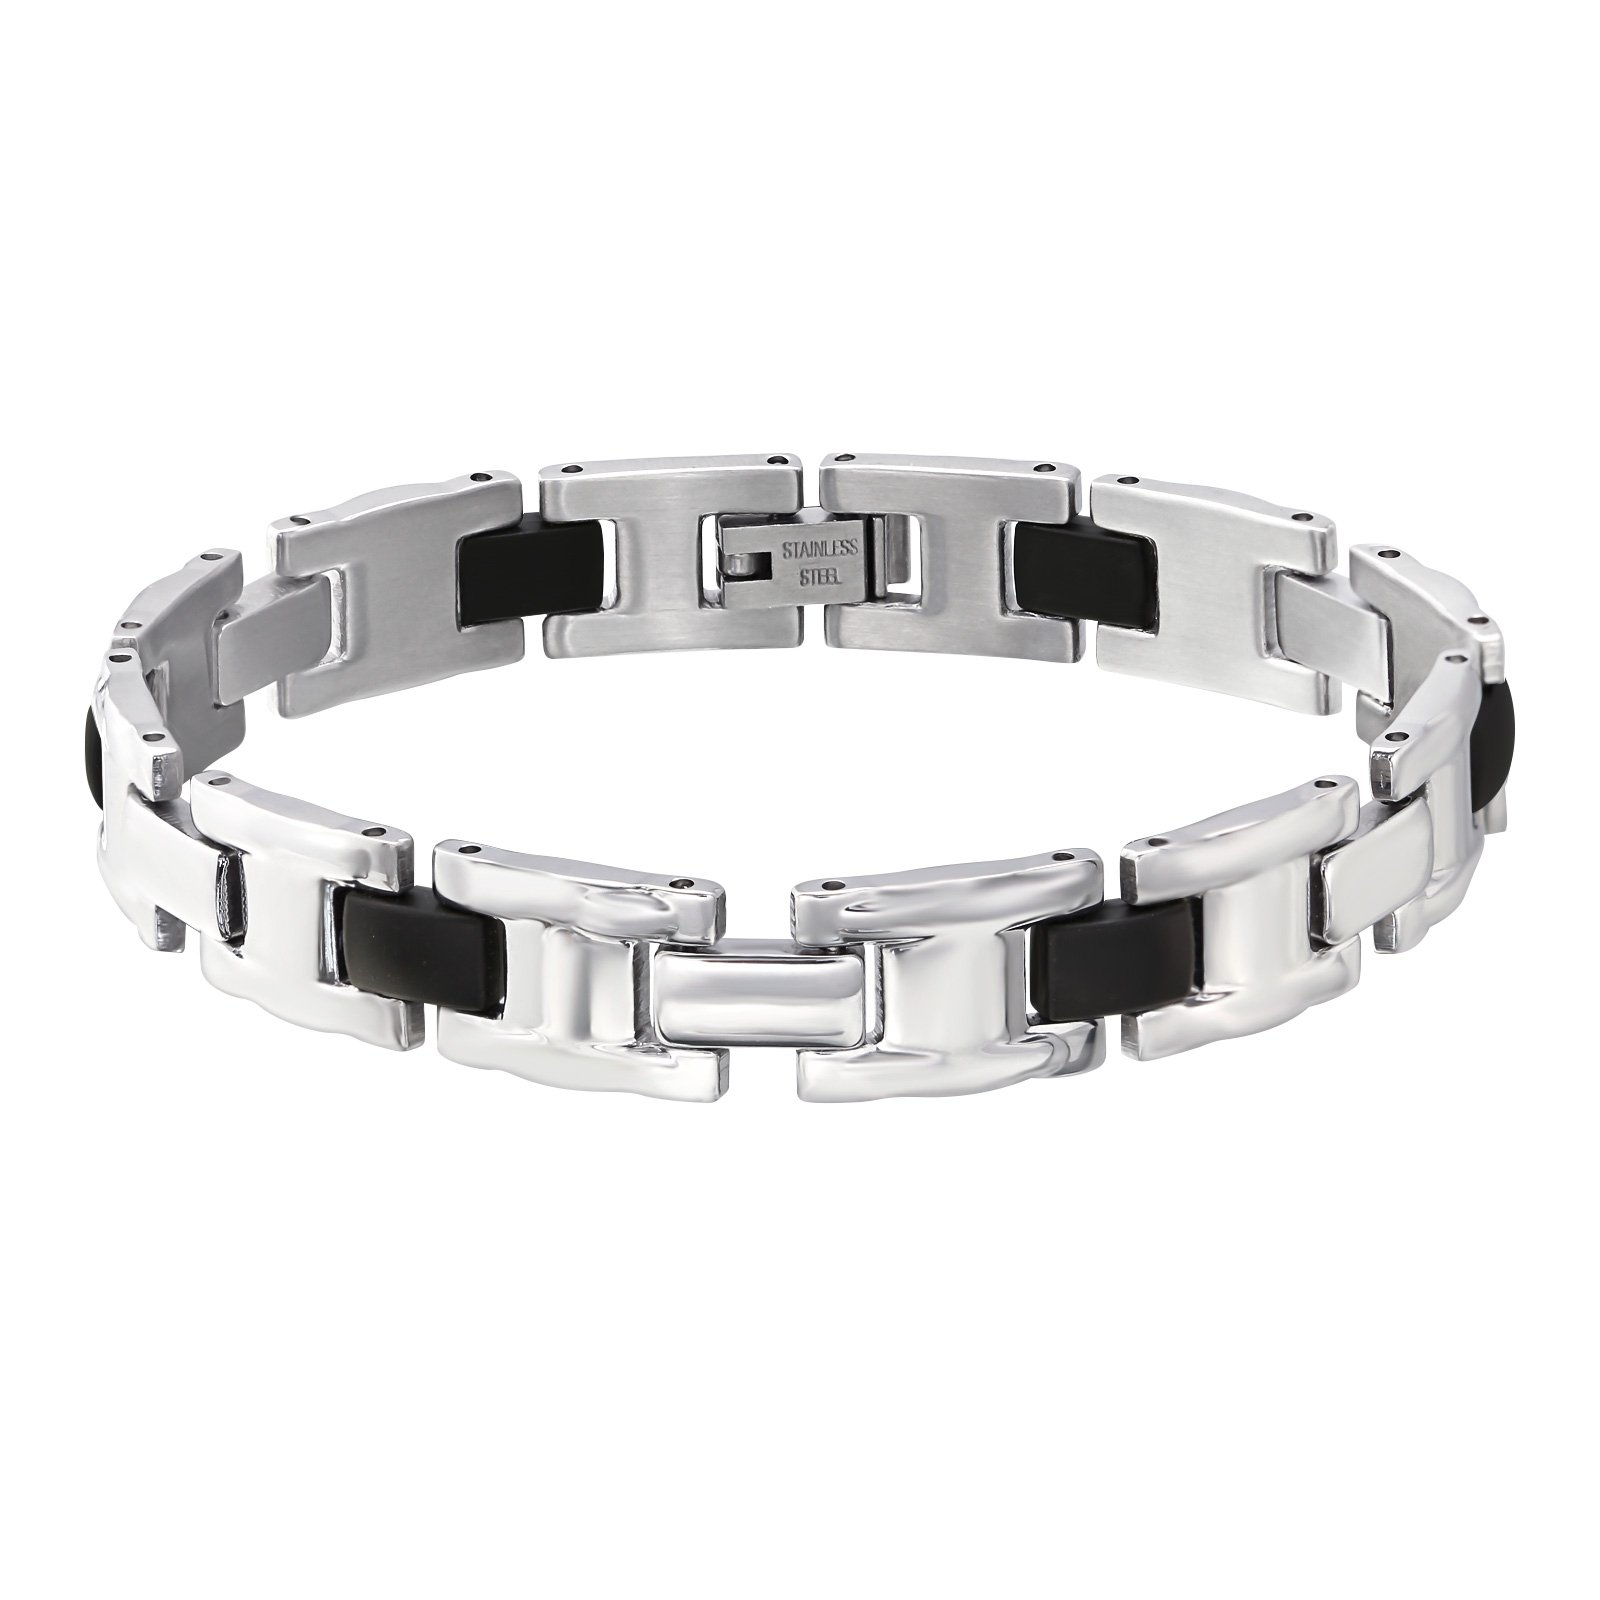 Surgical Steel & Rubber Bracelet - Jewellery-Bracelets : Mariposa ...